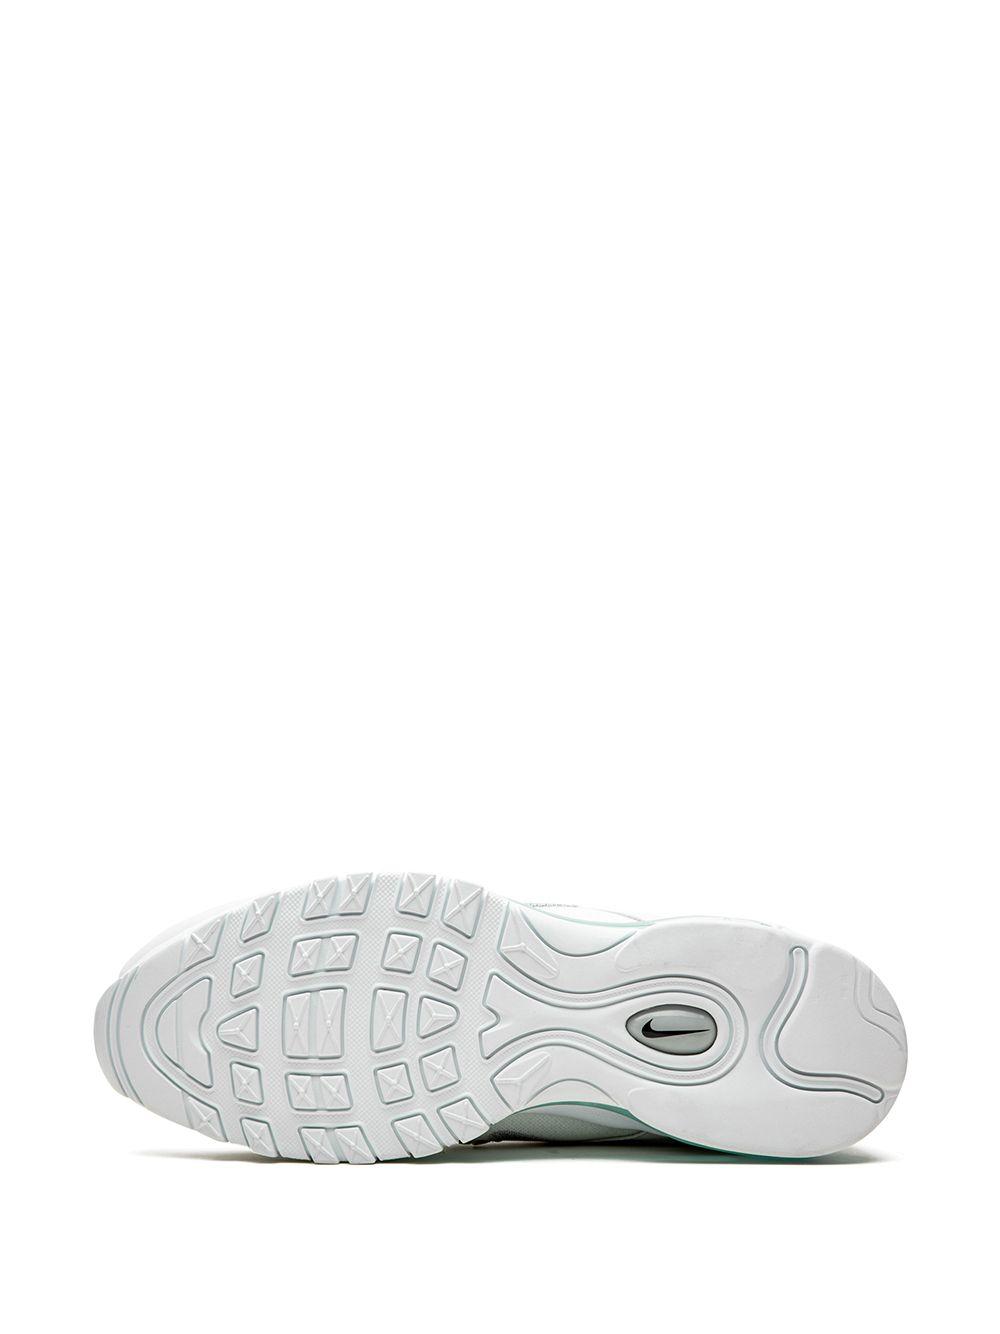 Zapatillas Air Max 97 Jesus Shoes Nike de hombre de color Blanco | Lyst